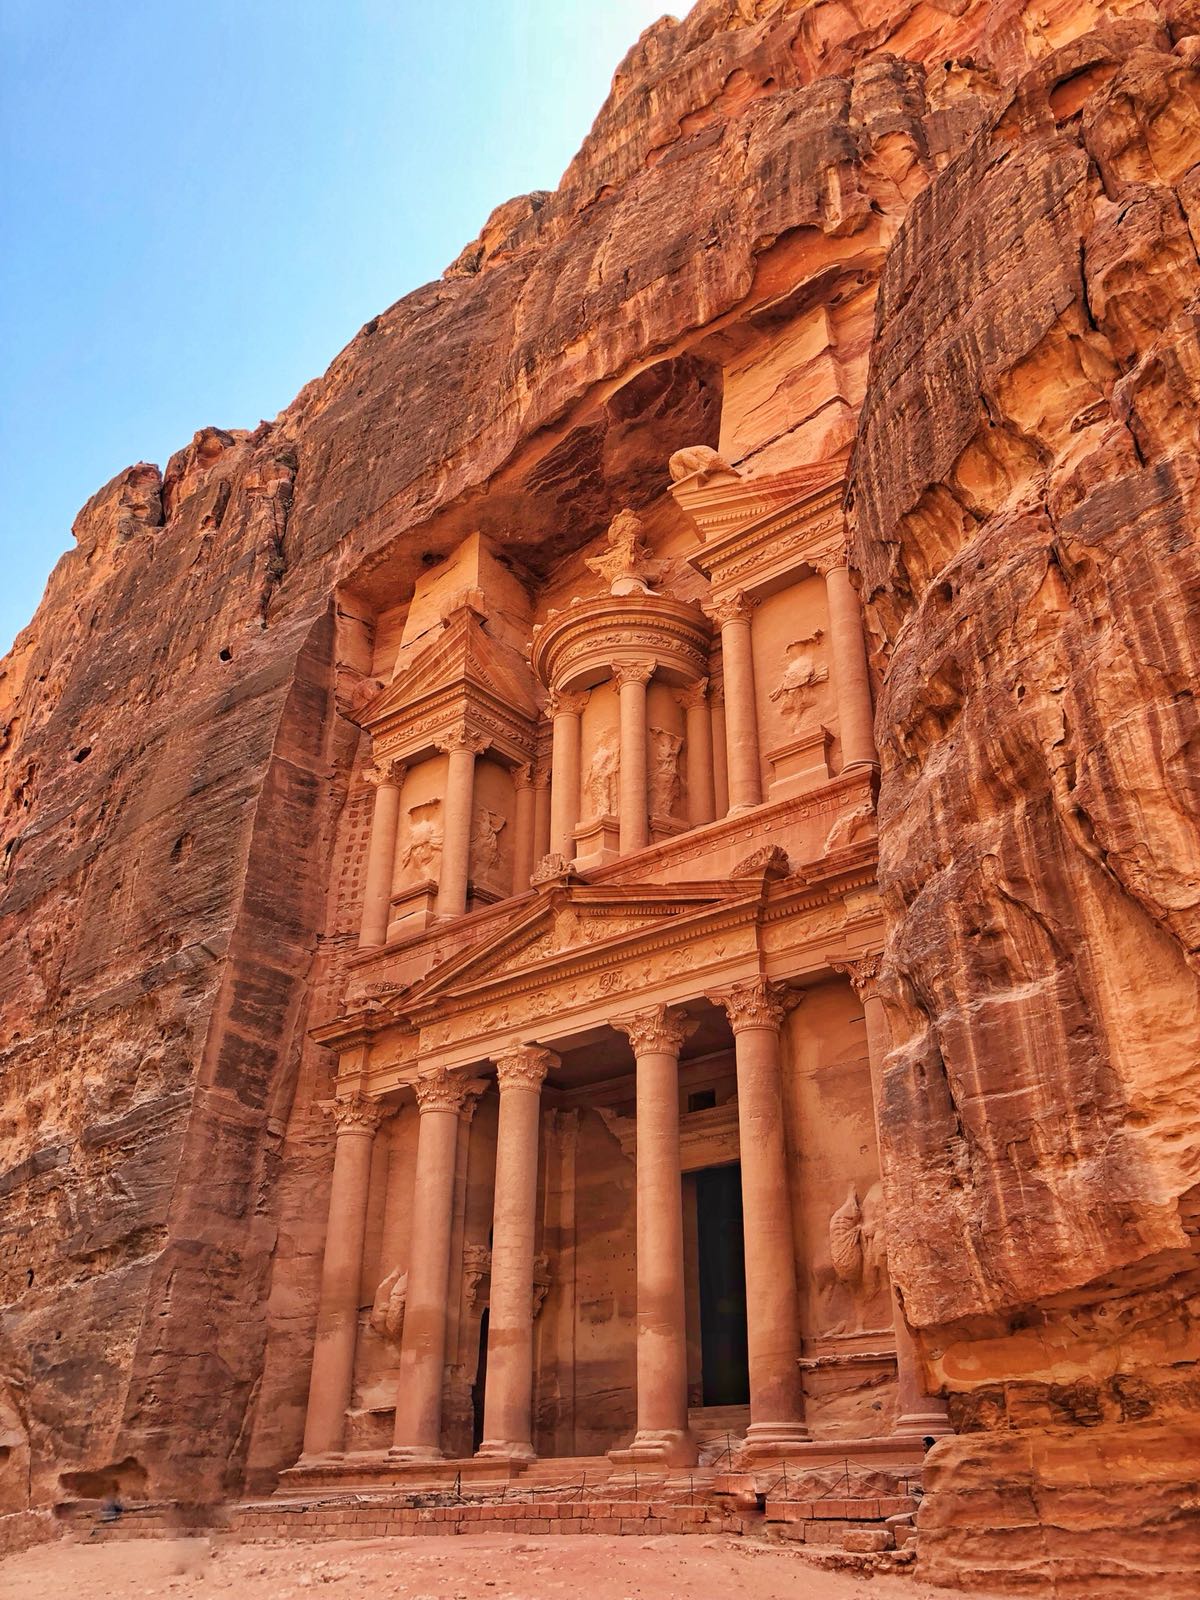 Petra, the Treasury